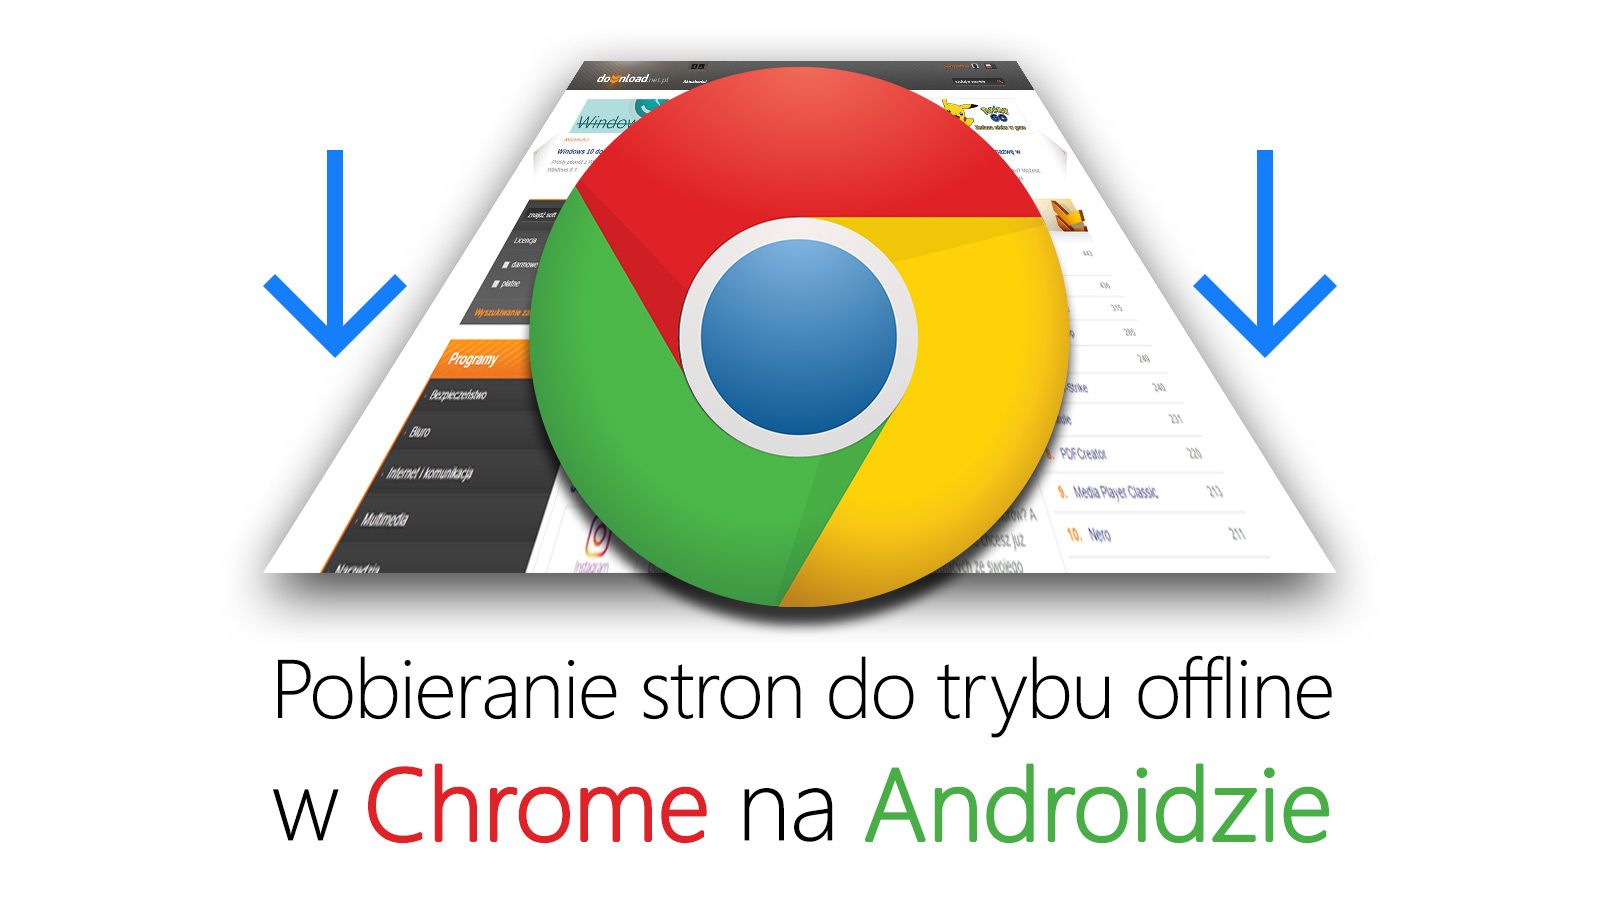 Загрузка офлайн-страниц в Chrome 55